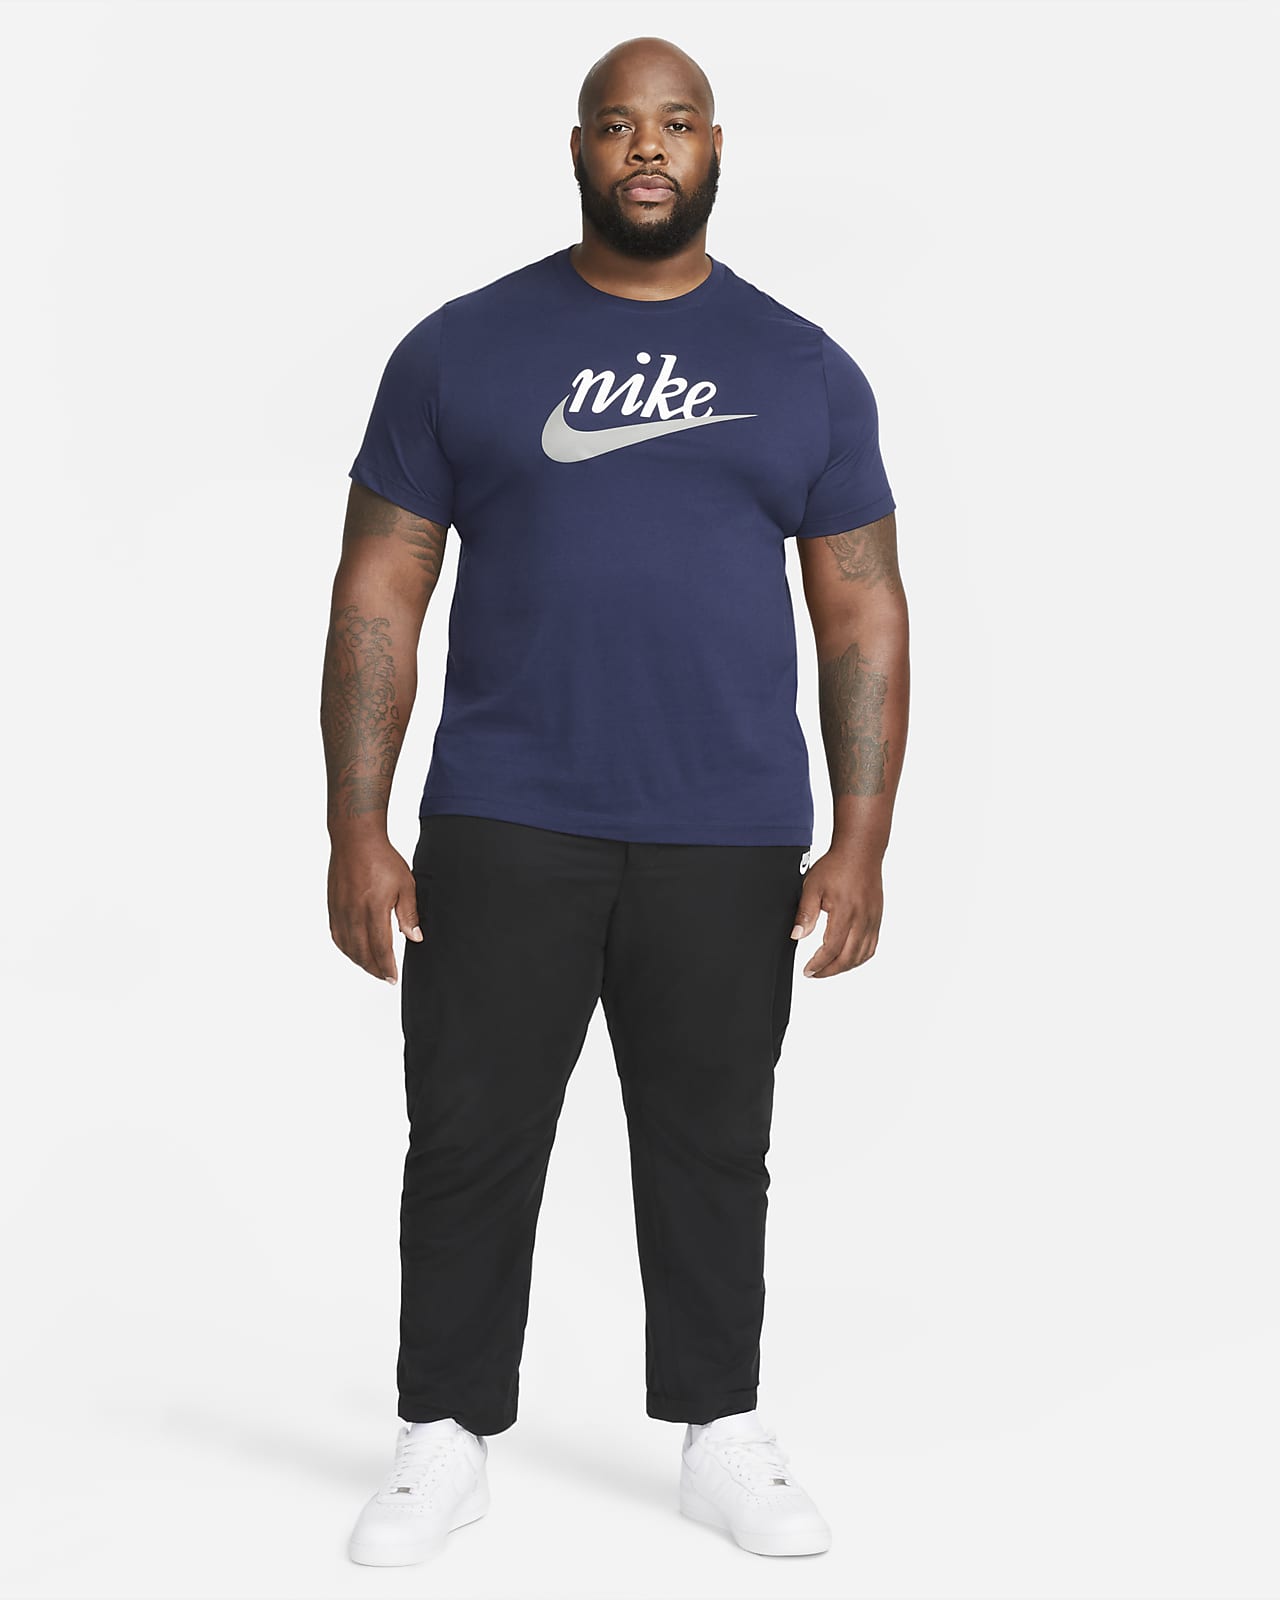 Nike, Ver camisetas, ropa y zapatillas de deporte de Nike